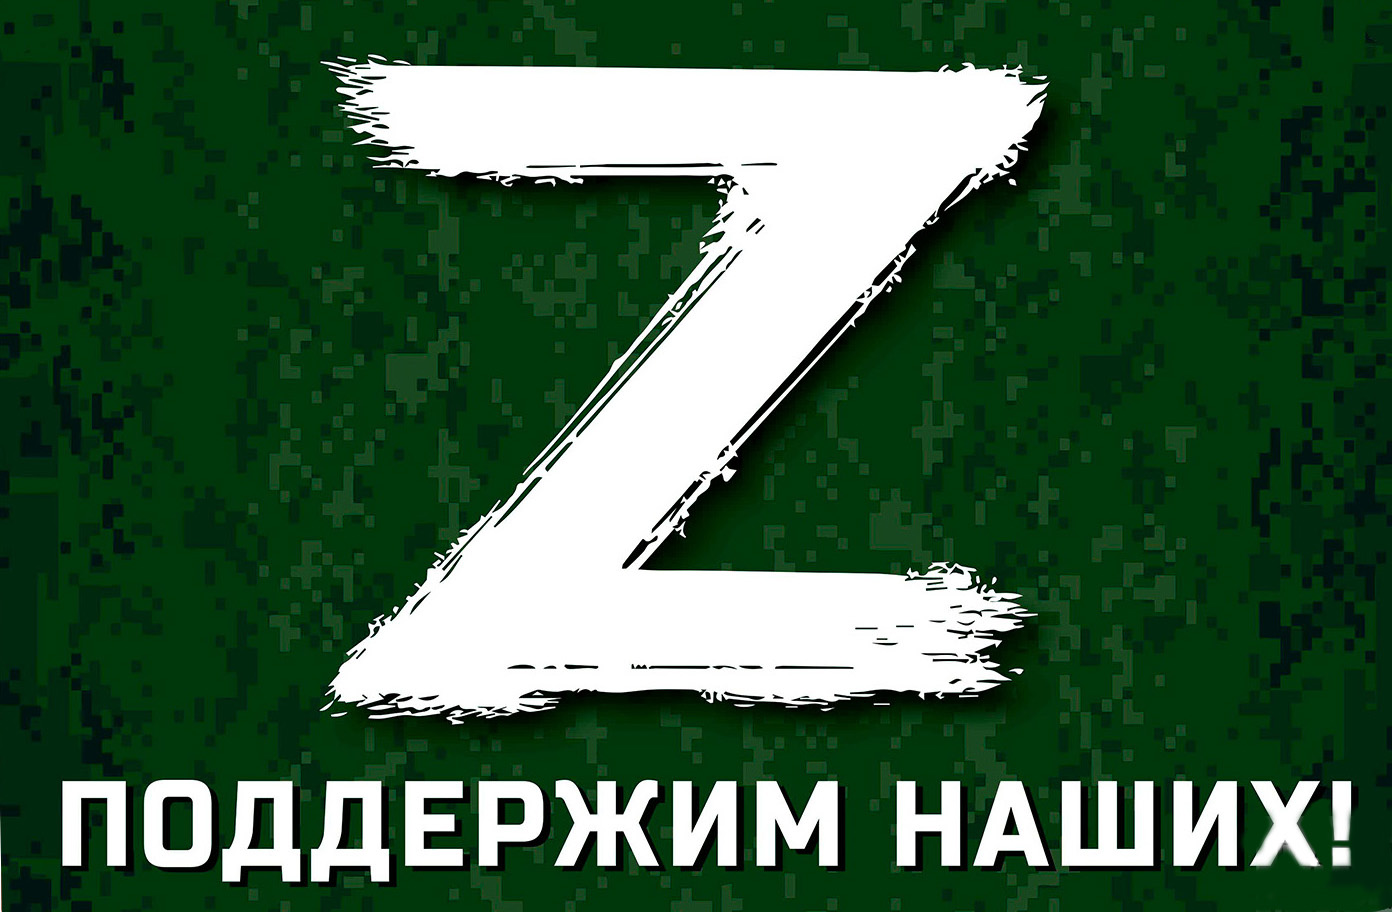 Z на фоне российского